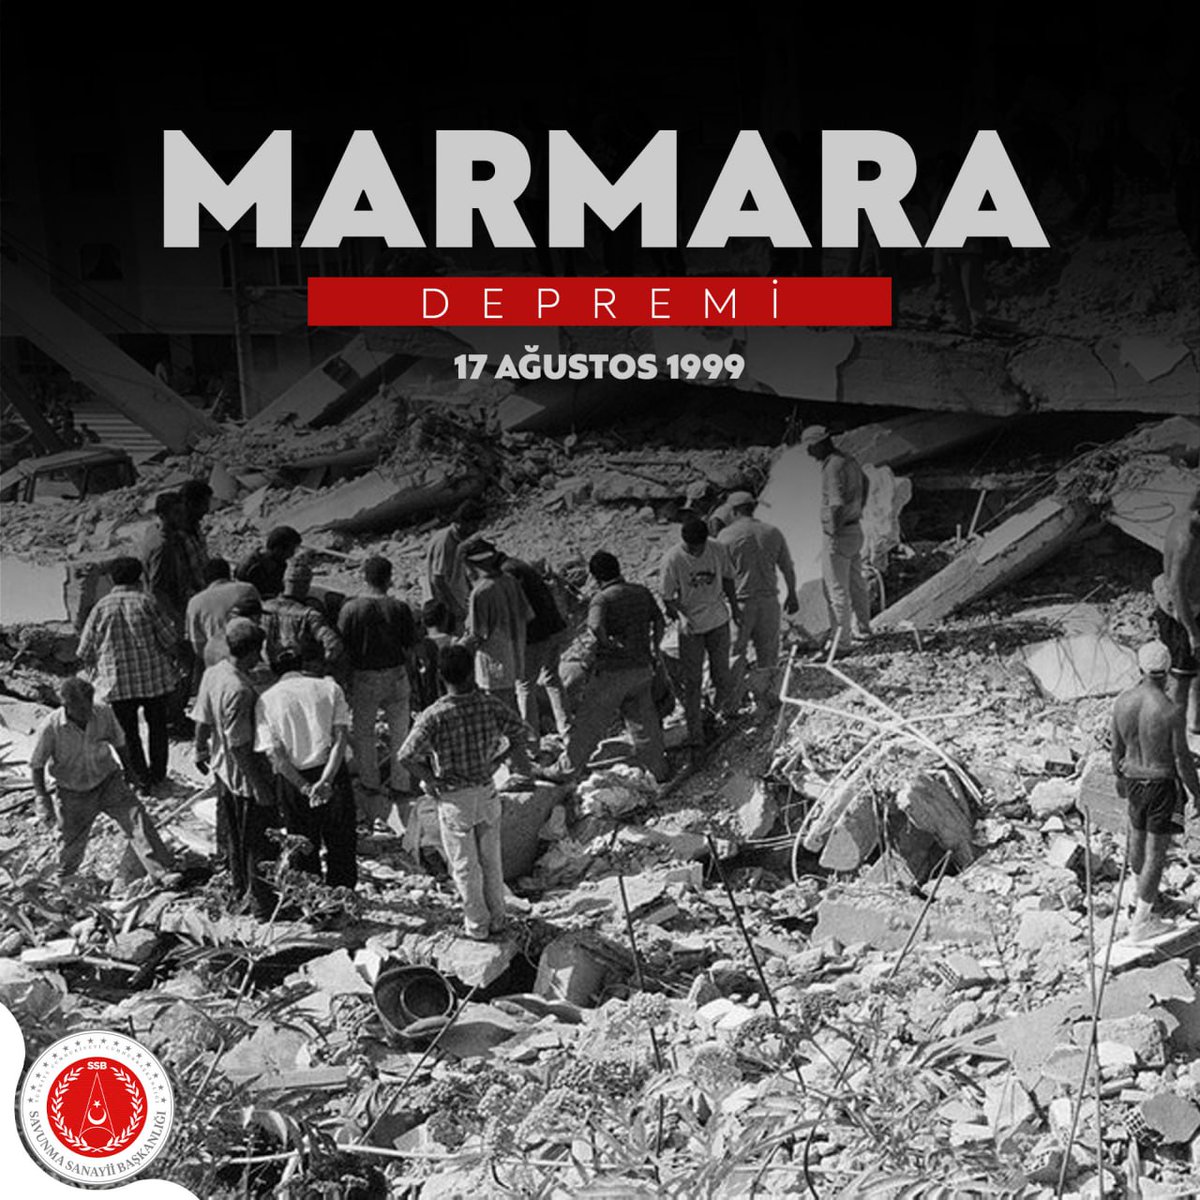 17 Ağustos Büyük Marmara Depremi’nin 24. yılında, hayatını kaybeden vatandaşlarımızı rahmetle anıyoruz.